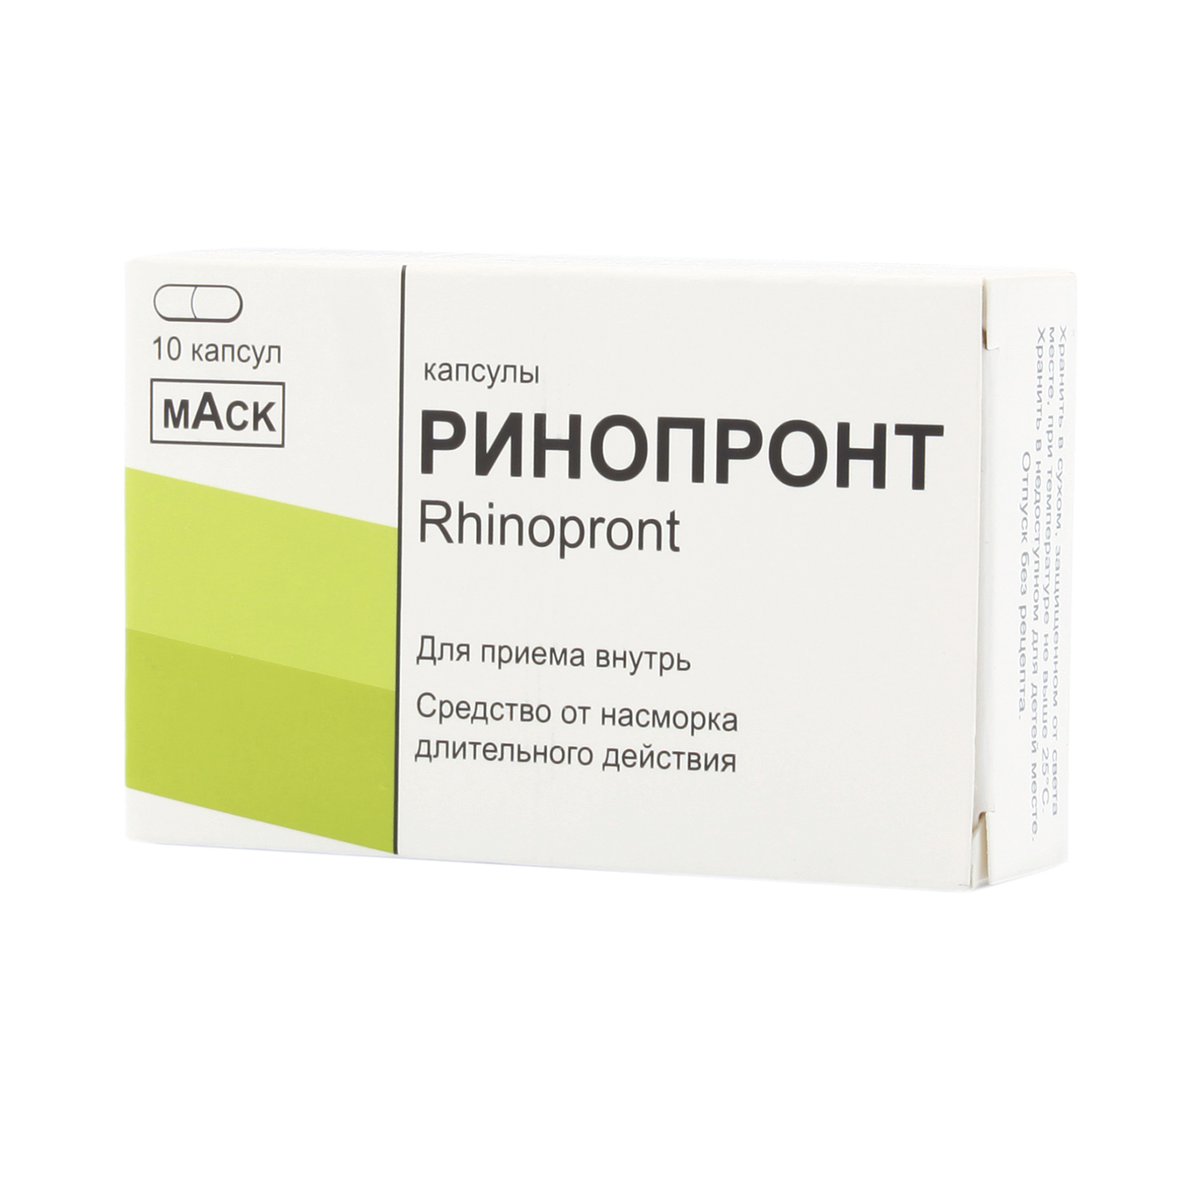 Ринопронт (капсулы, 10 шт) - цена,  онлайн , описание .